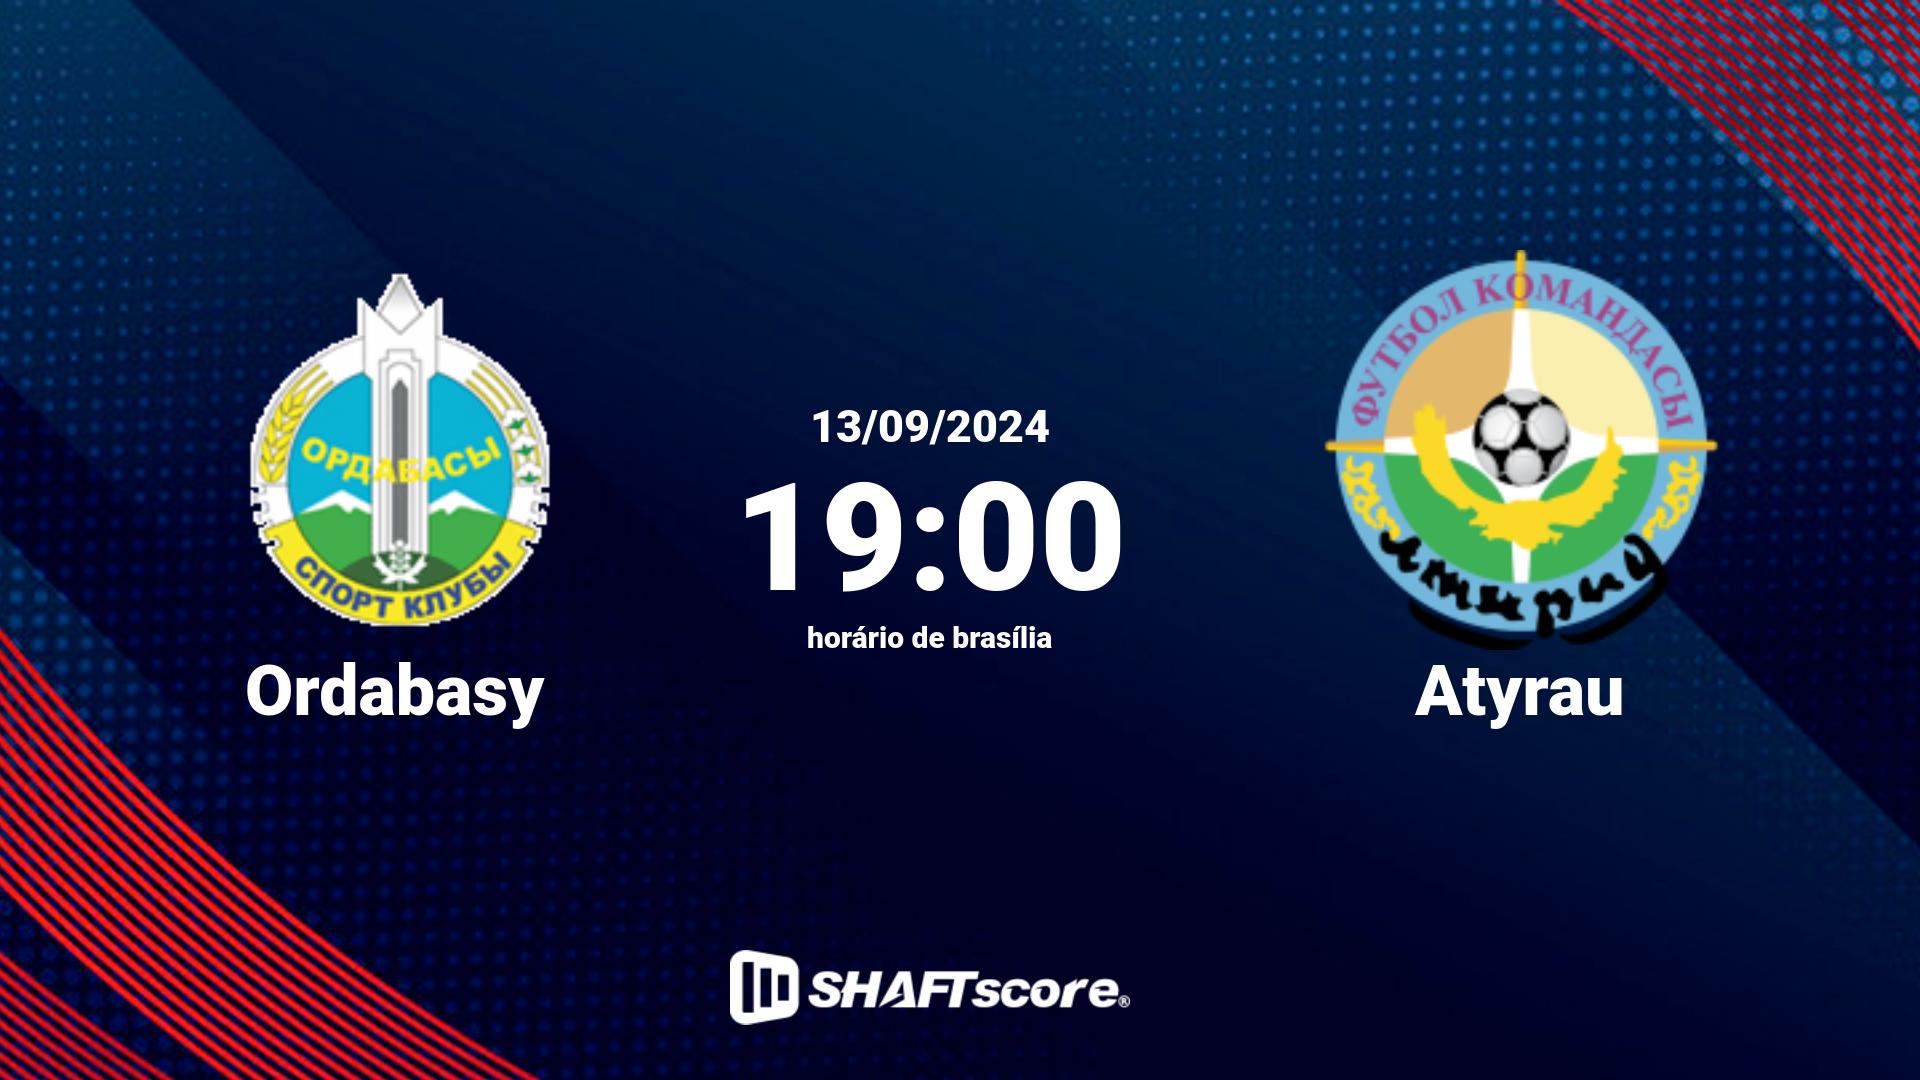 Estatísticas do jogo Ordabasy vs Atyrau 13.09 19:00